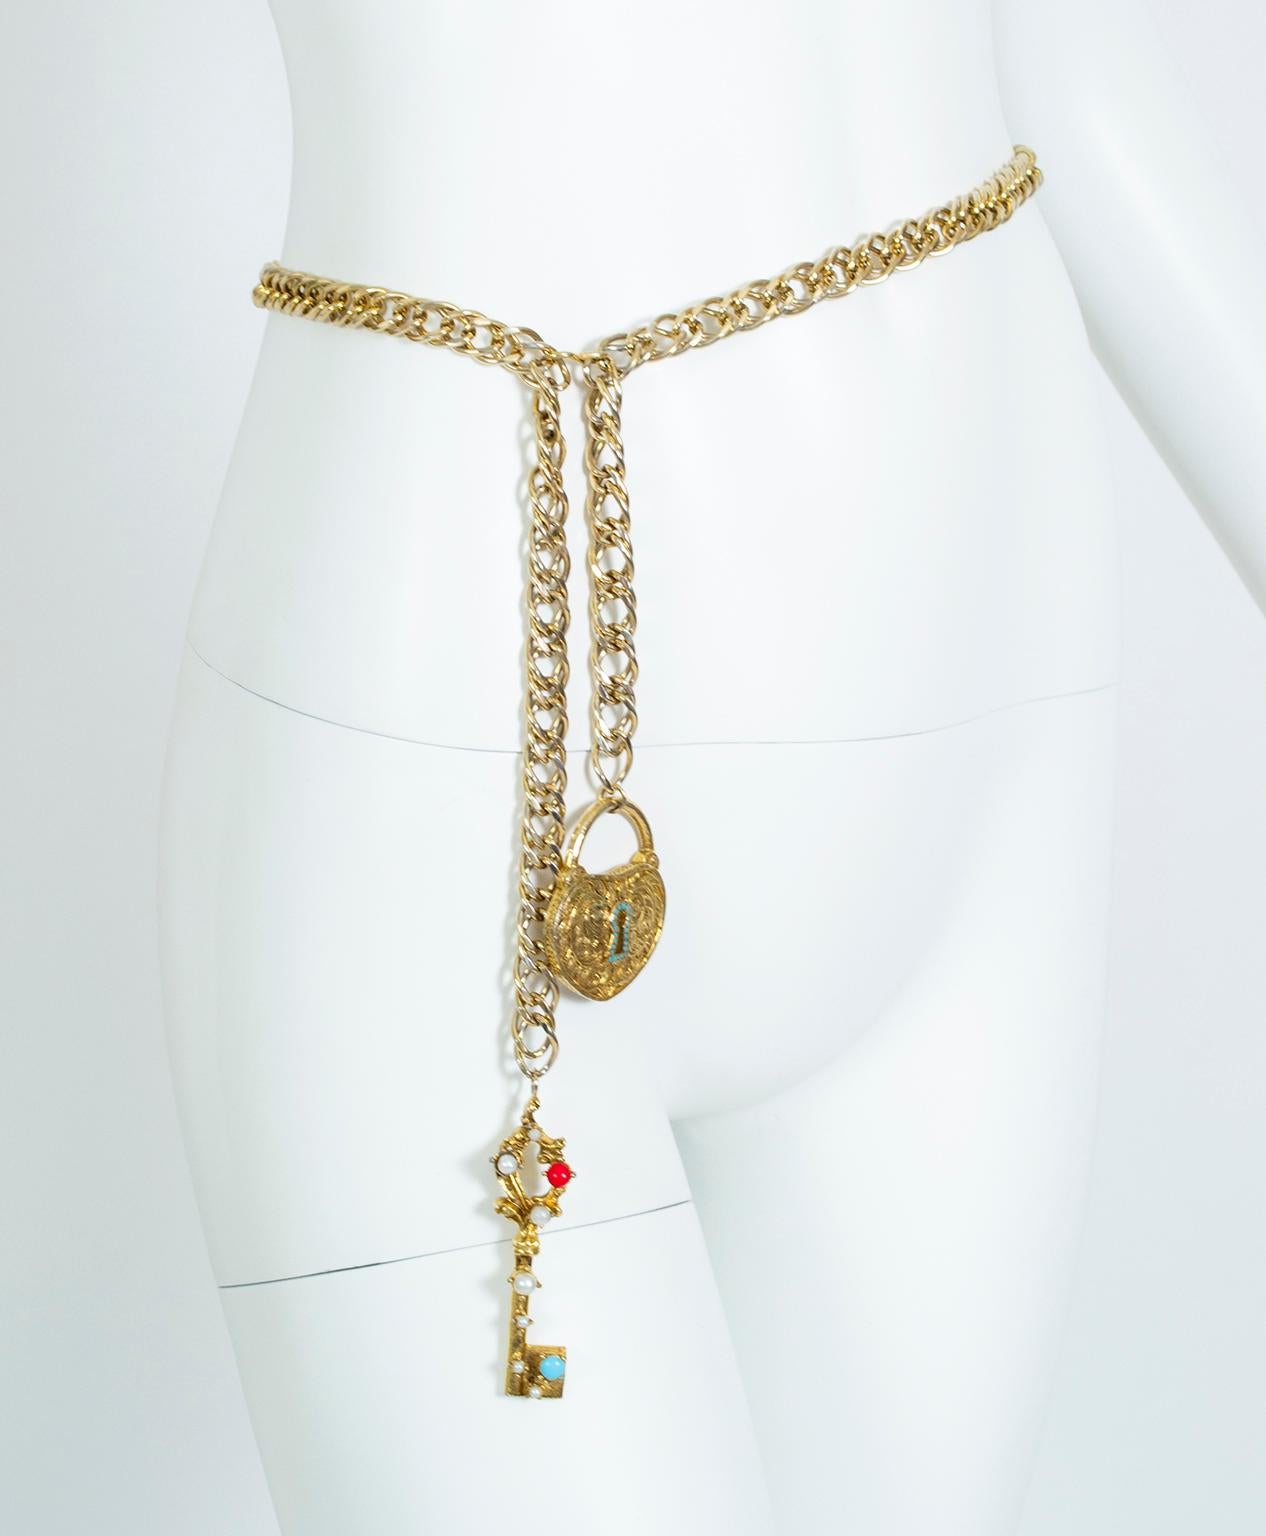 Promesse de luxe, cette ceinture à chaîne rappelle les très rares ceintures à serrure et clé de Chanel des années 80, sauf qu'elle les précède d'une bonne vingtaine d'années. Serti de cabochons multicolores et de fausses perles, il peut être porté